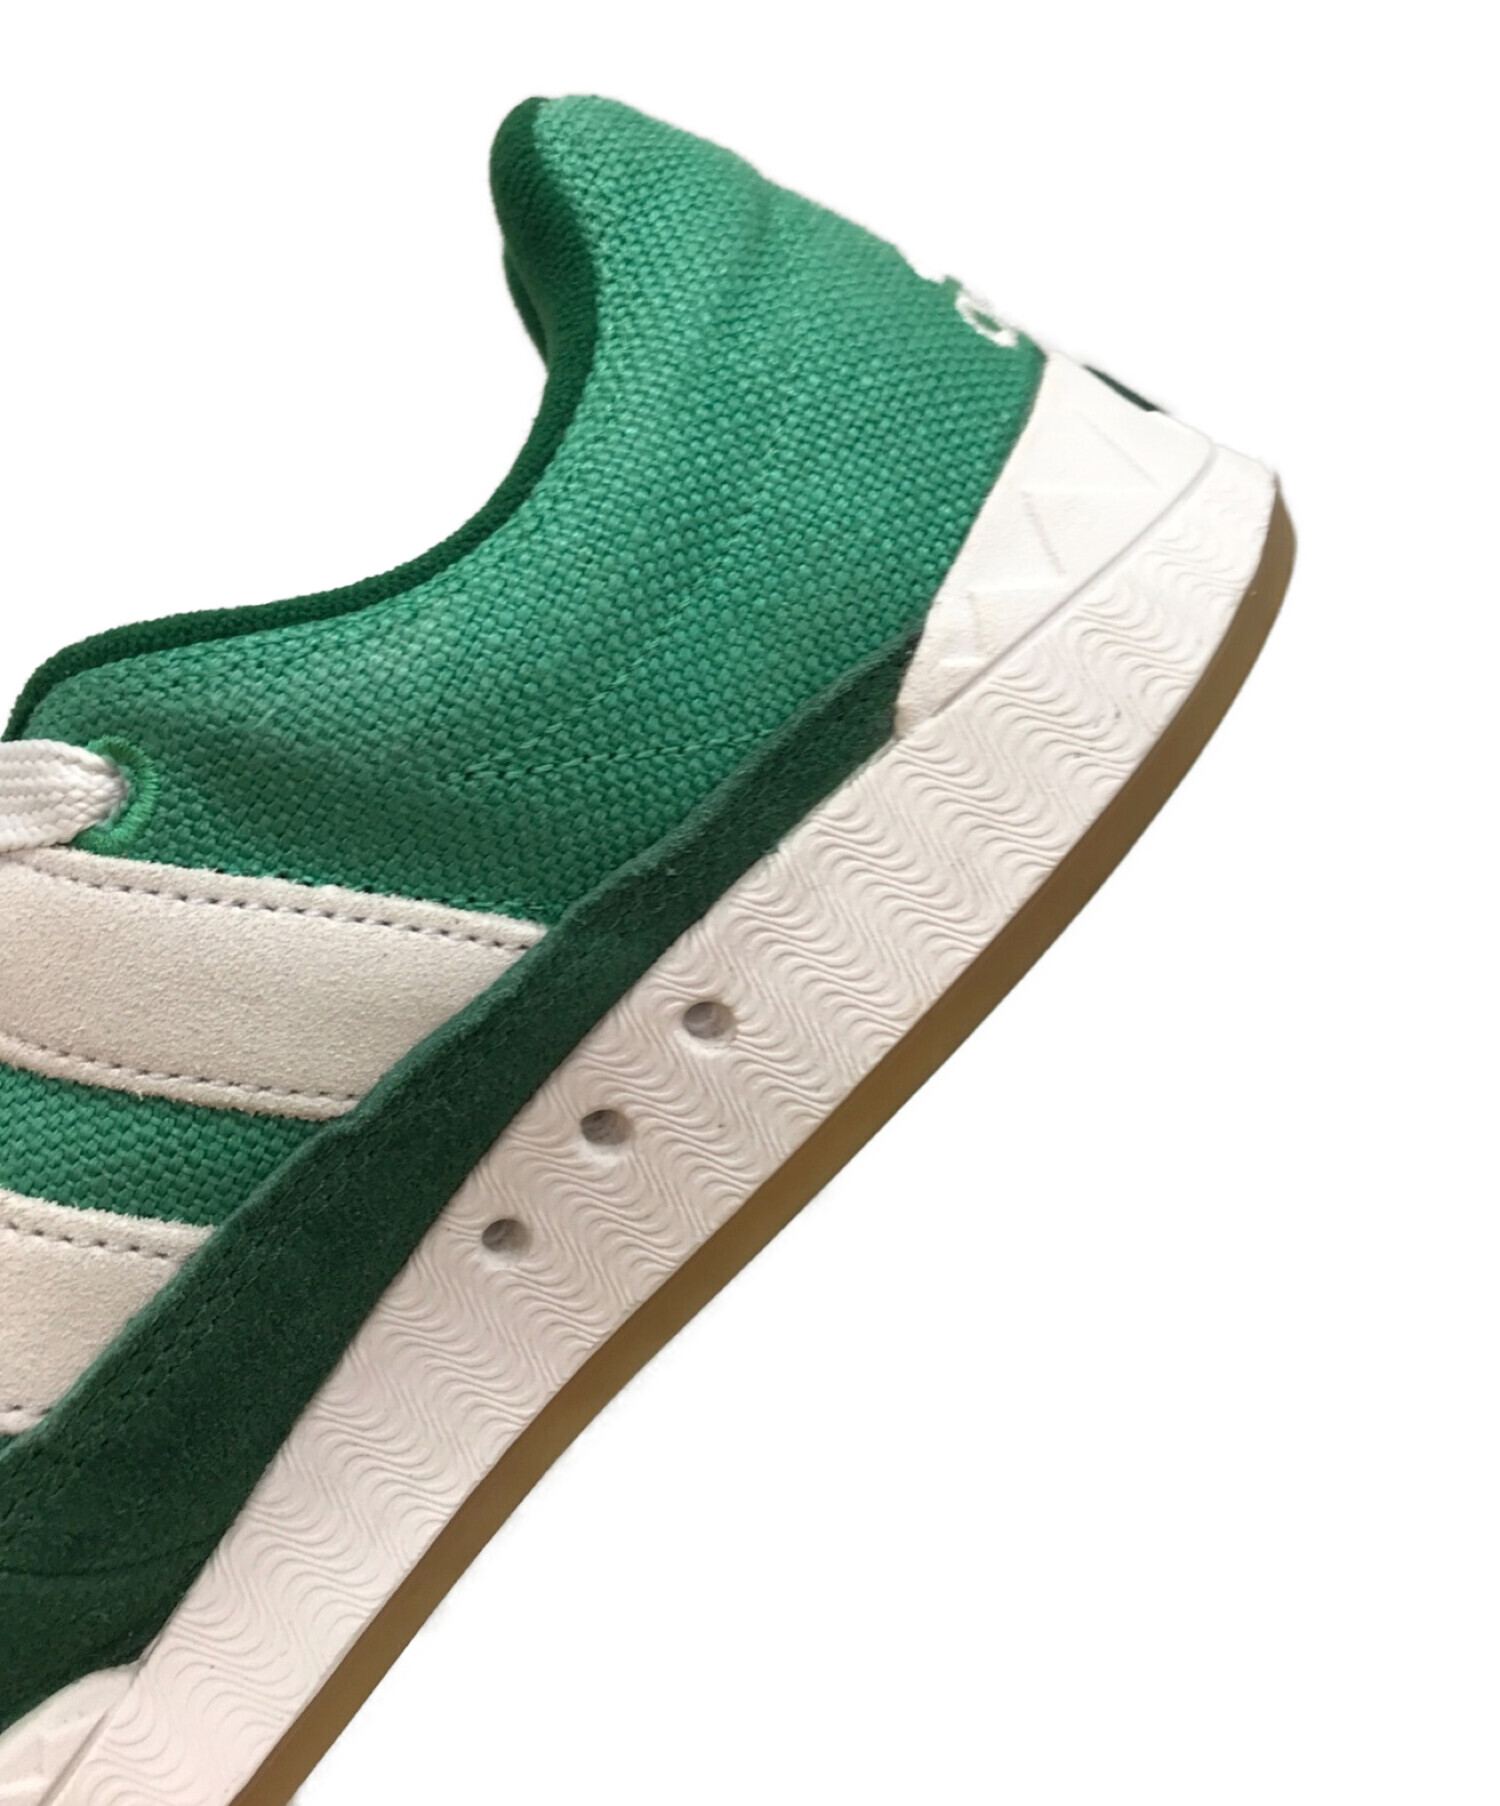 adidas (アディダス) ローカットスニーカー / アディマティック / Adimatic / Semi Court Green /  セミコートグリーン グリーン サイズ:28cm